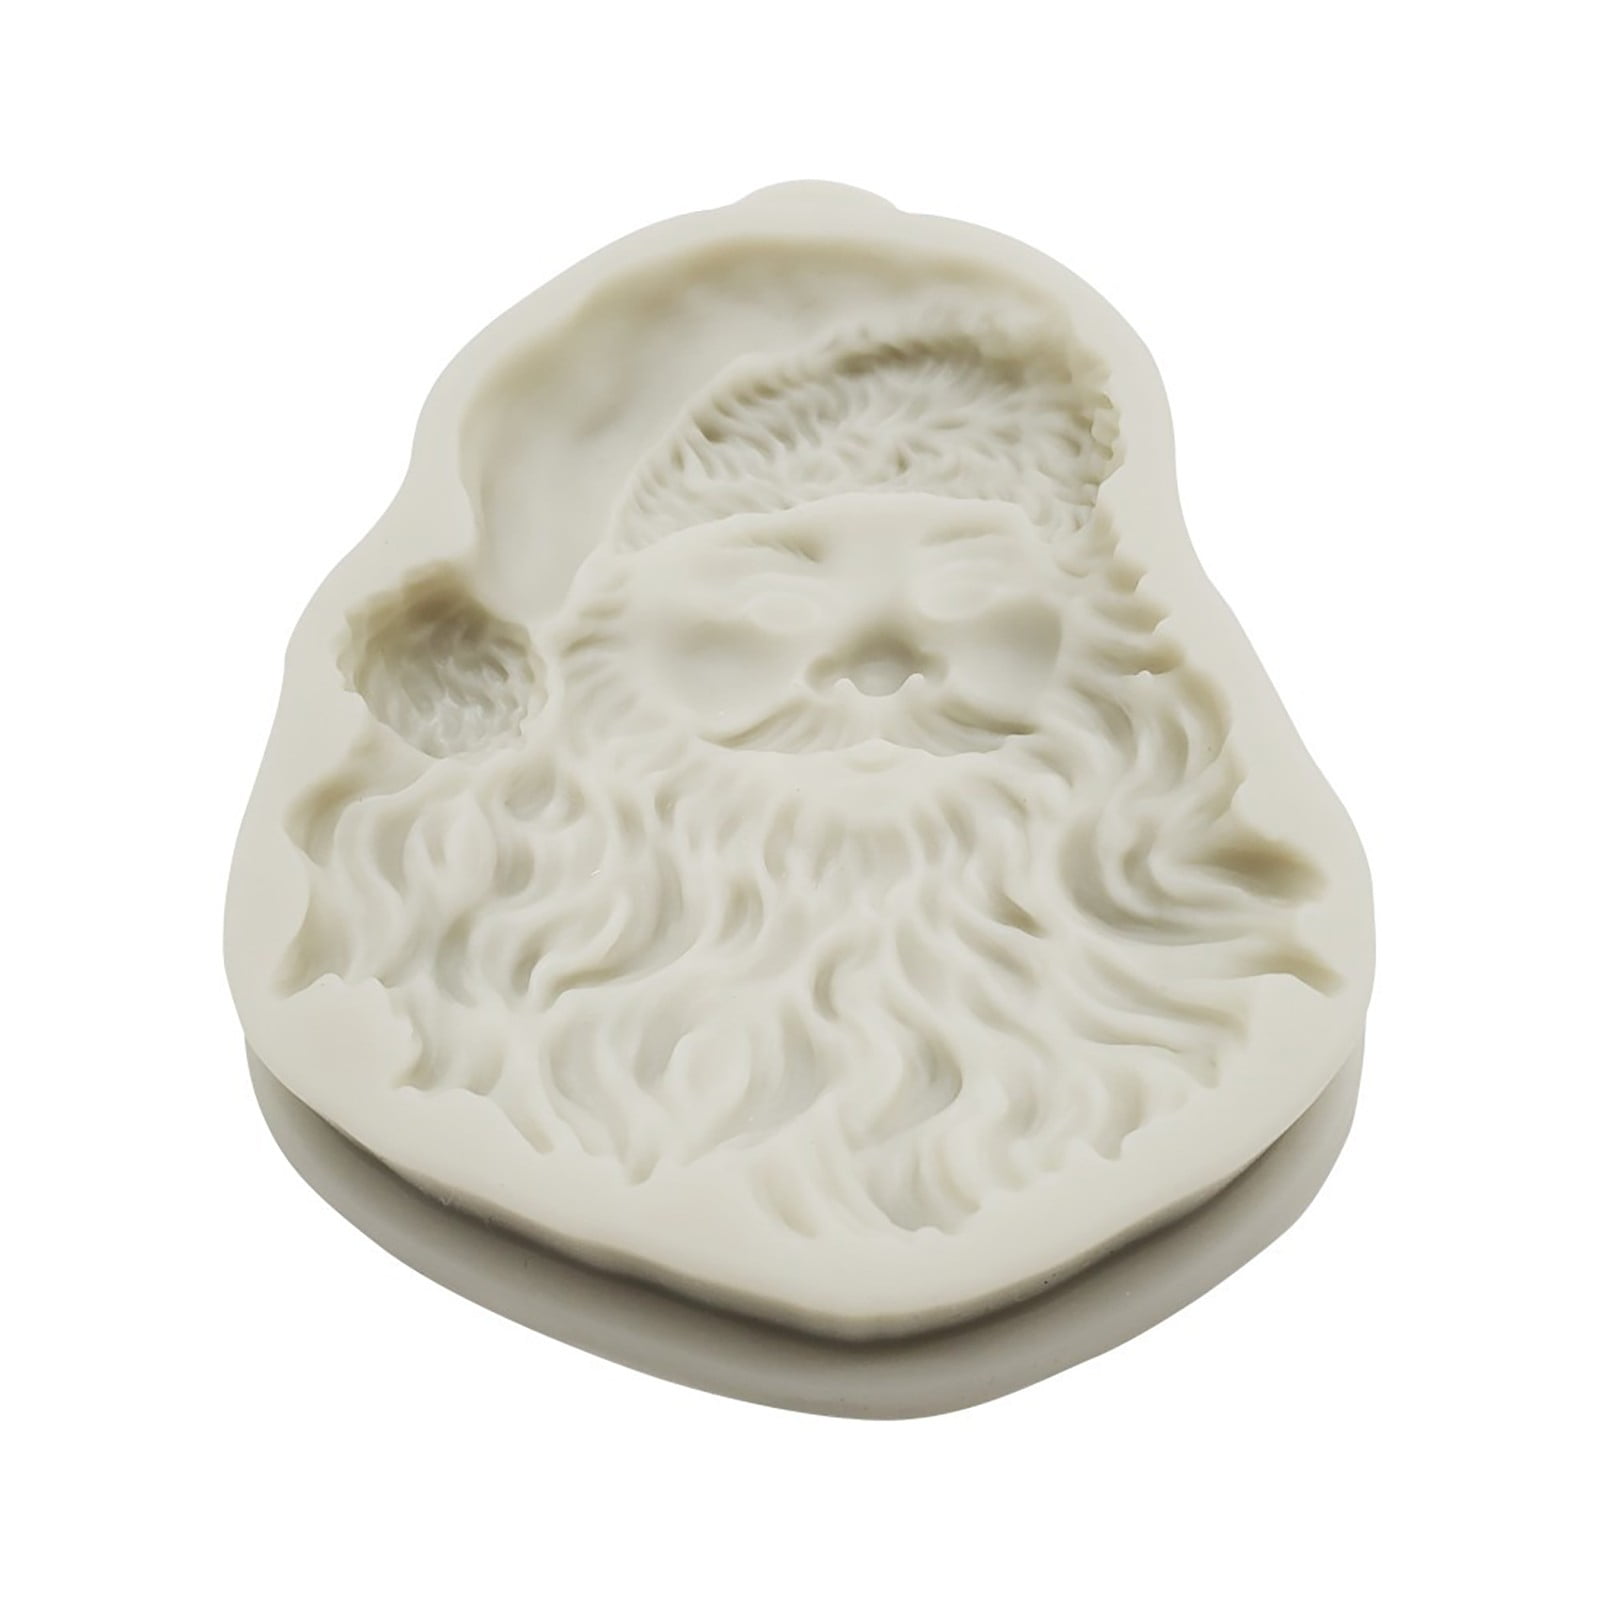 STÄDTER We love baking Santa Claus – 3D Cake pan